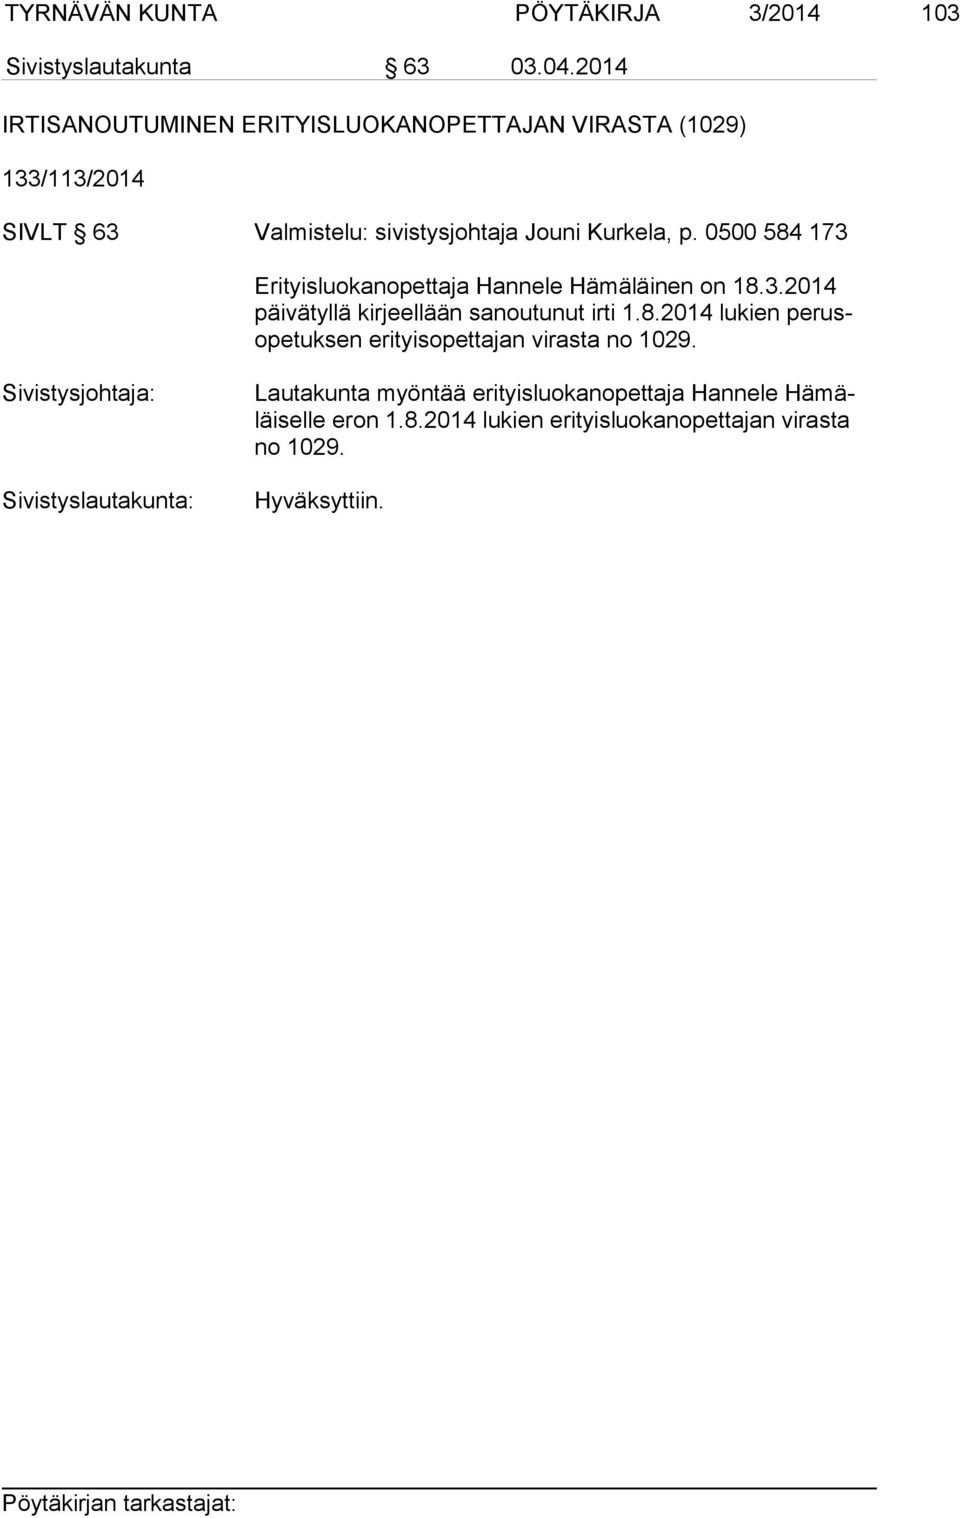 0500 584 173 Erityisluokanopettaja Hannele Hämäläinen on 18.3.2014 päi vä tyl lä kirjeellään sanoutunut irti 1.8.2014 lukien pe rusope tuk sen erityisopettajan virasta no 1029.